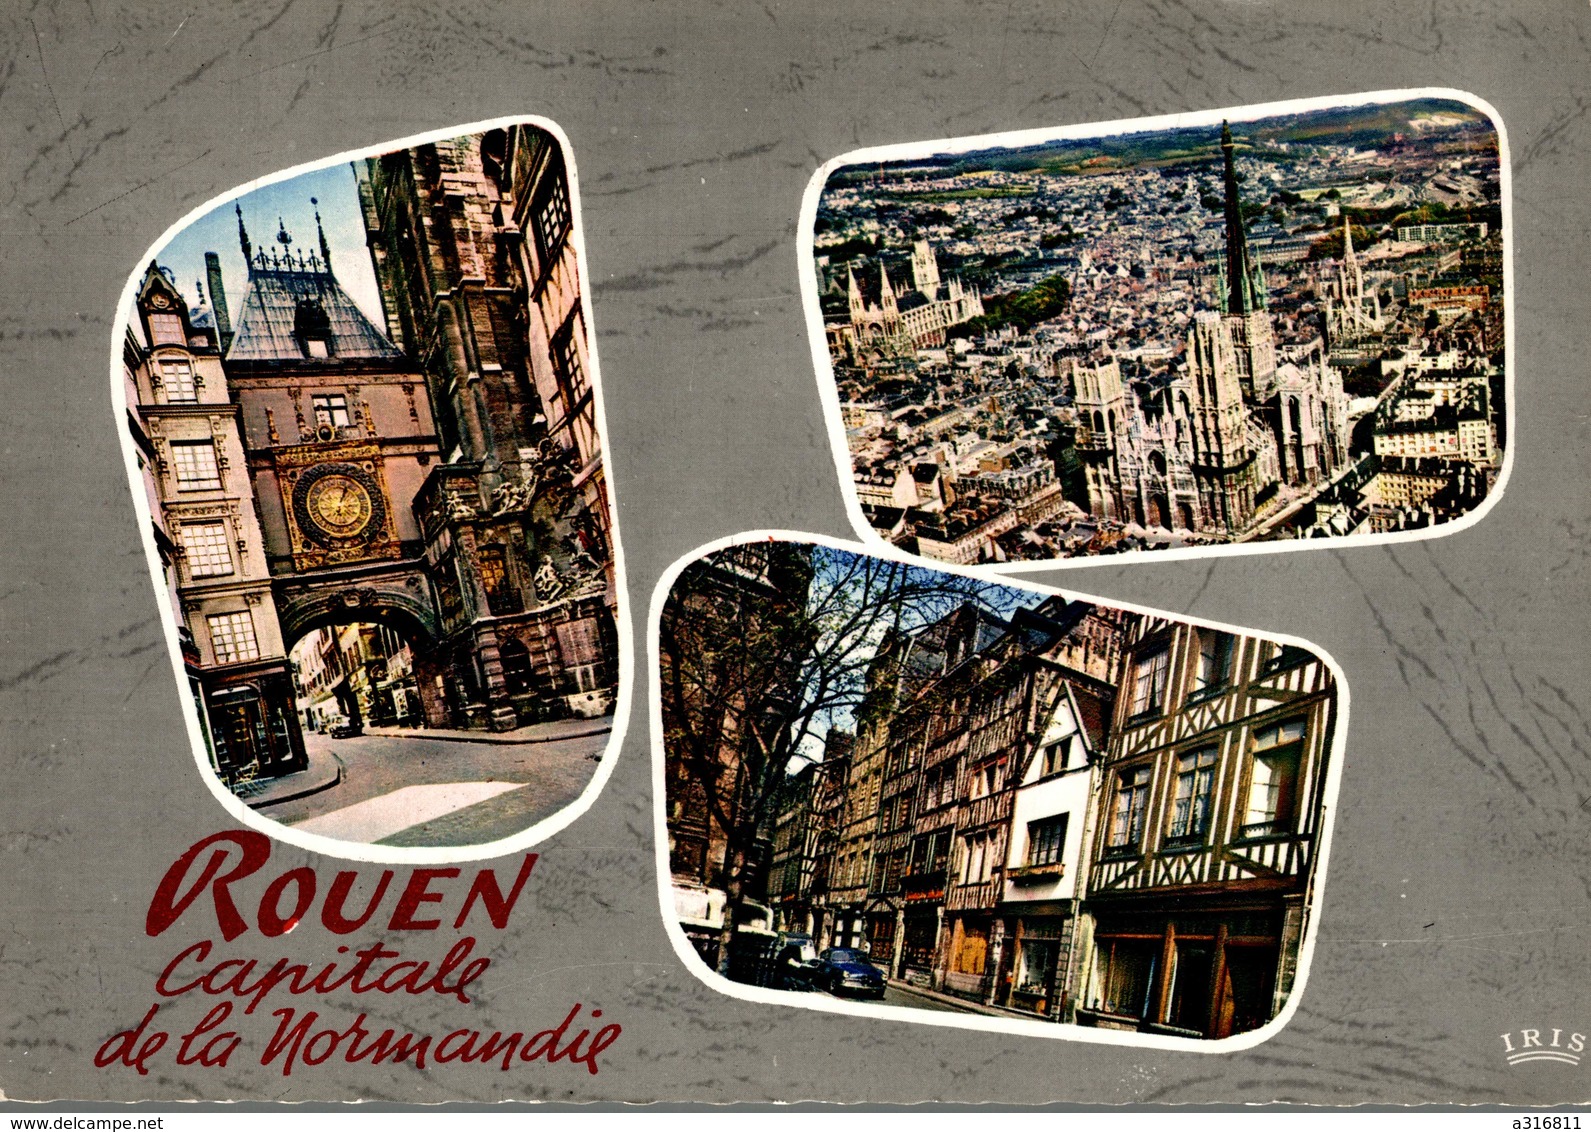 ROUEN CAPITAL DE LA NORMANDIE - Rouen